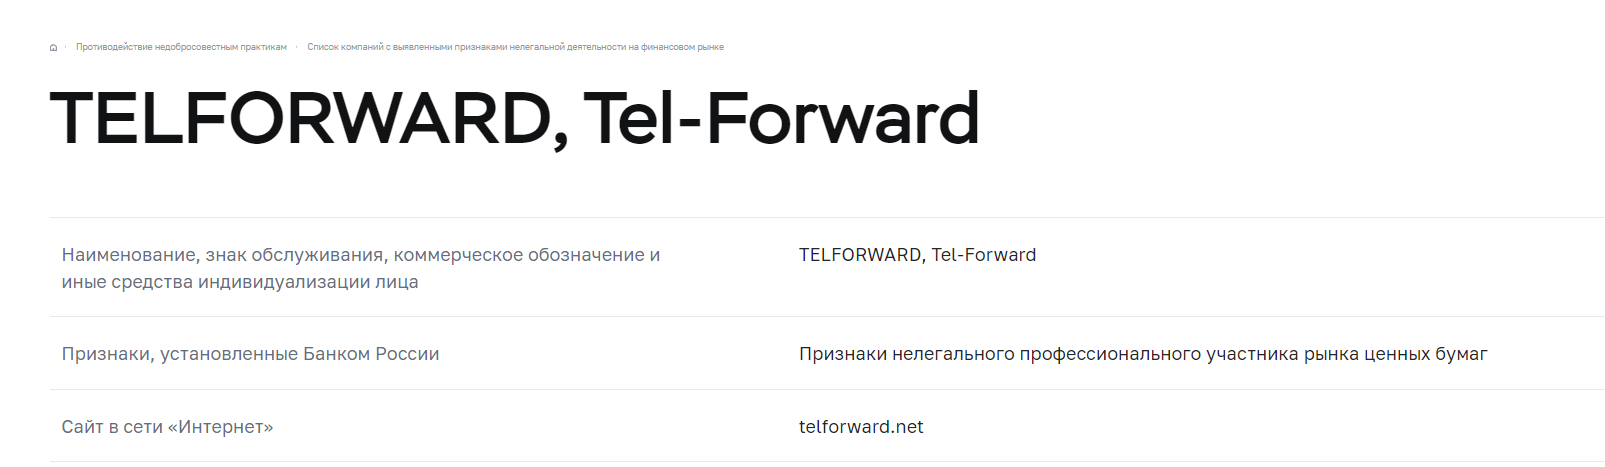 Teleforward - какие способы заработка здесь предлагают пользователям?, Фото № 7 - 1-consult.net